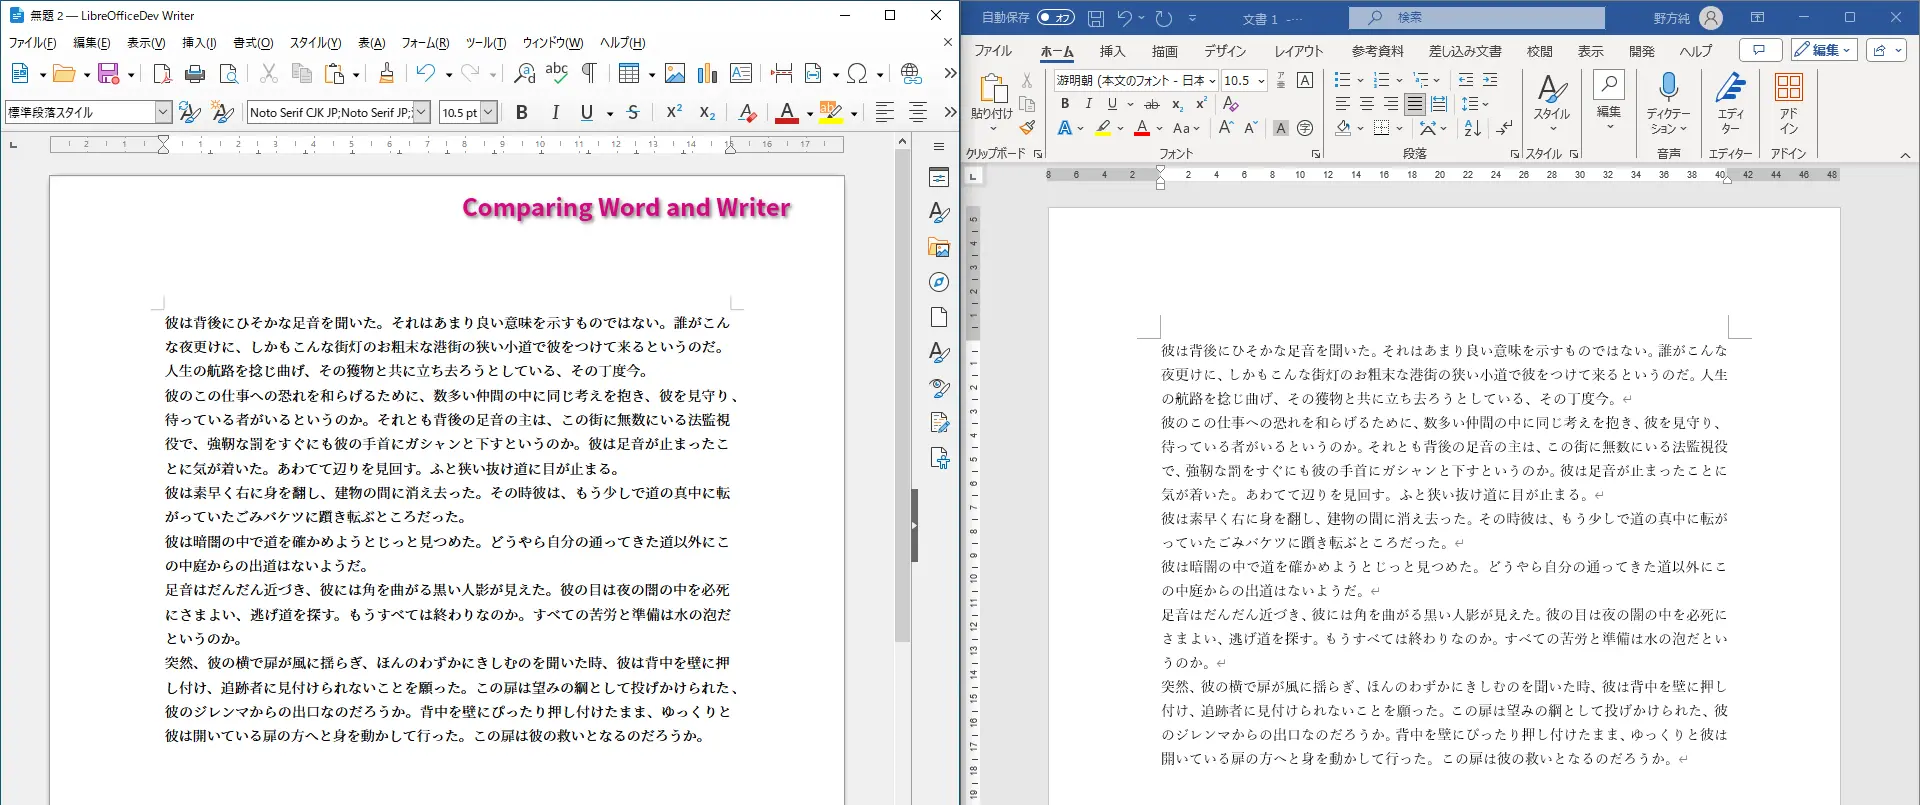 Captura de pantalla comparando LibreOffice Writer y Microsoft Word